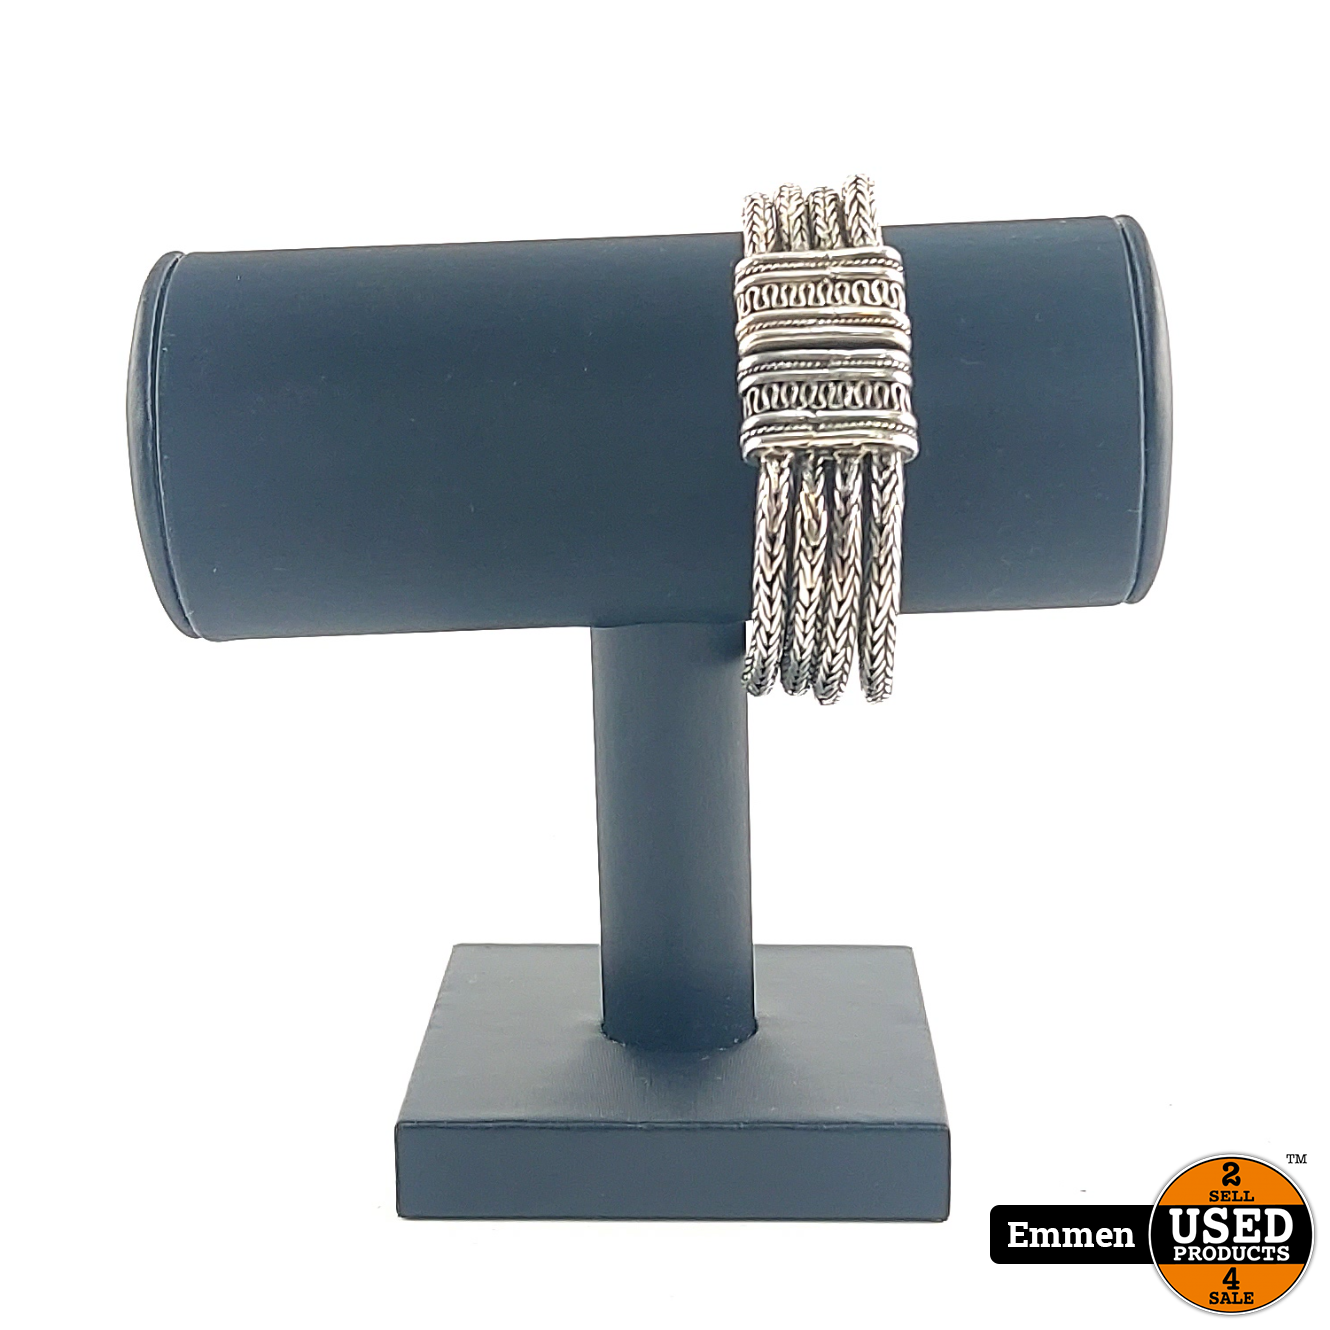 kompas Loodgieter Piraat Zilveren Armband 21Cm Lang 22mm Breed | Excl. Doos - Used Products Emmen